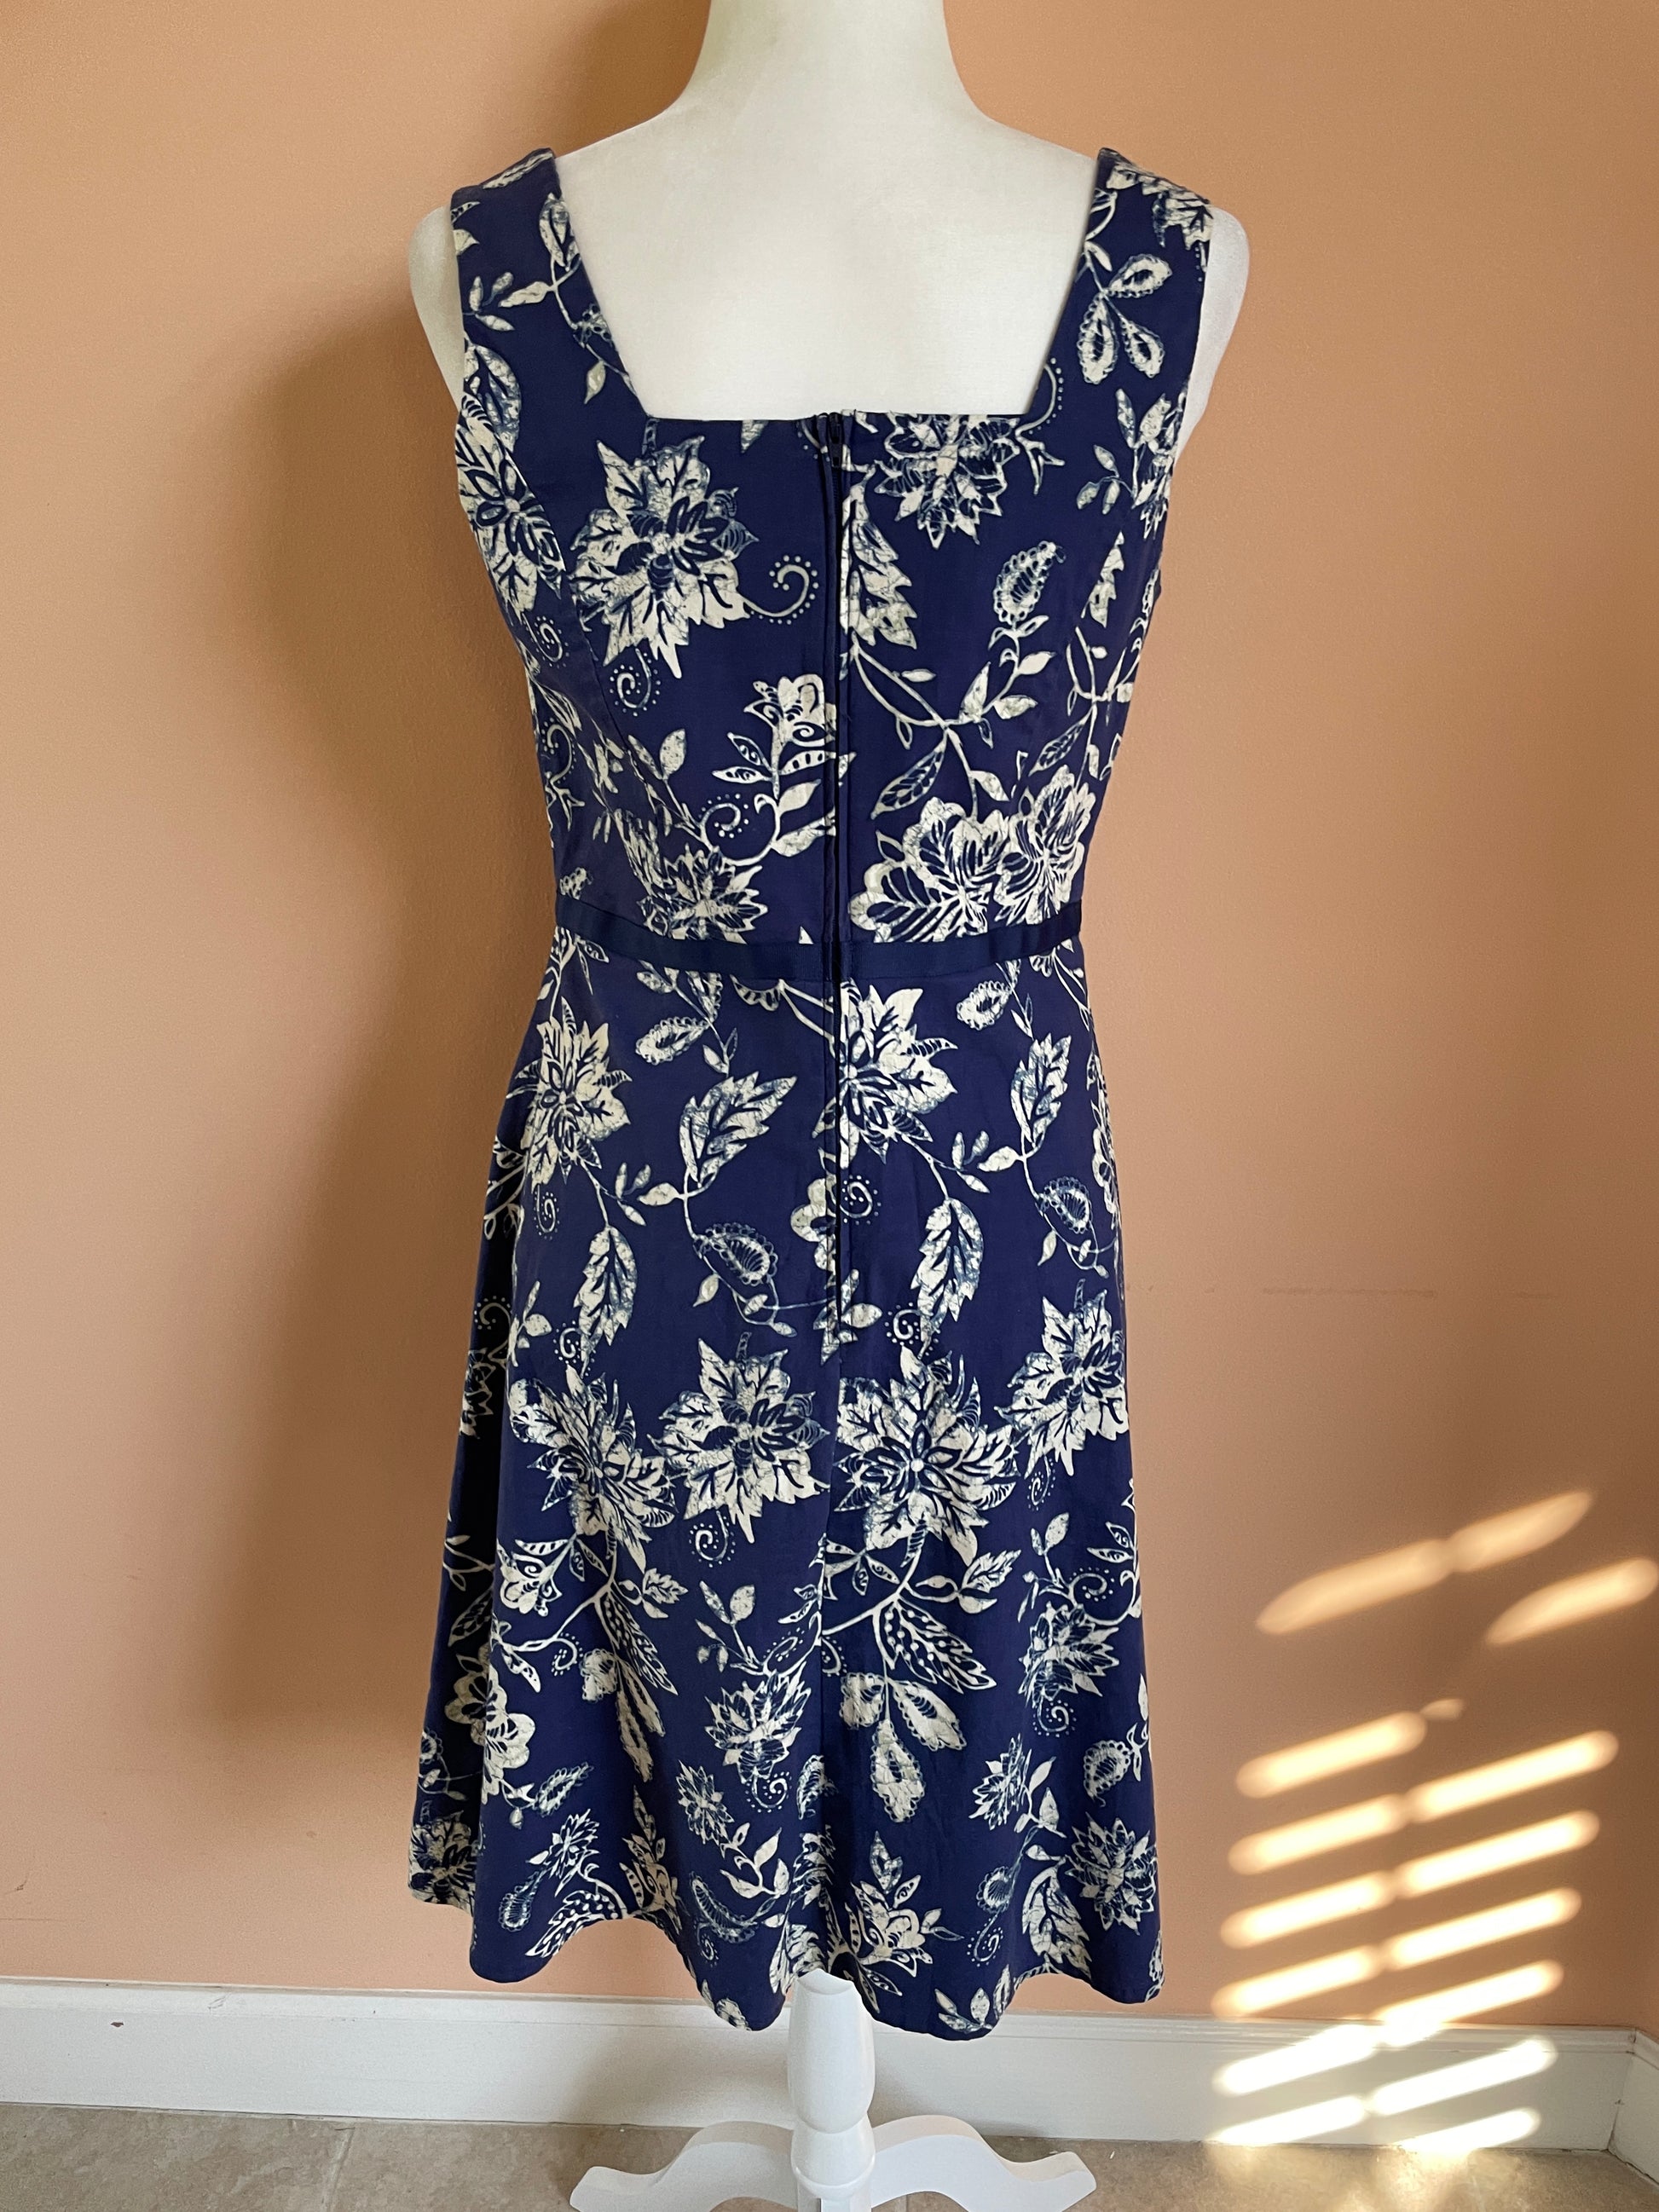  2000s Blue Summer Floral Cotton Sleeveless Dress